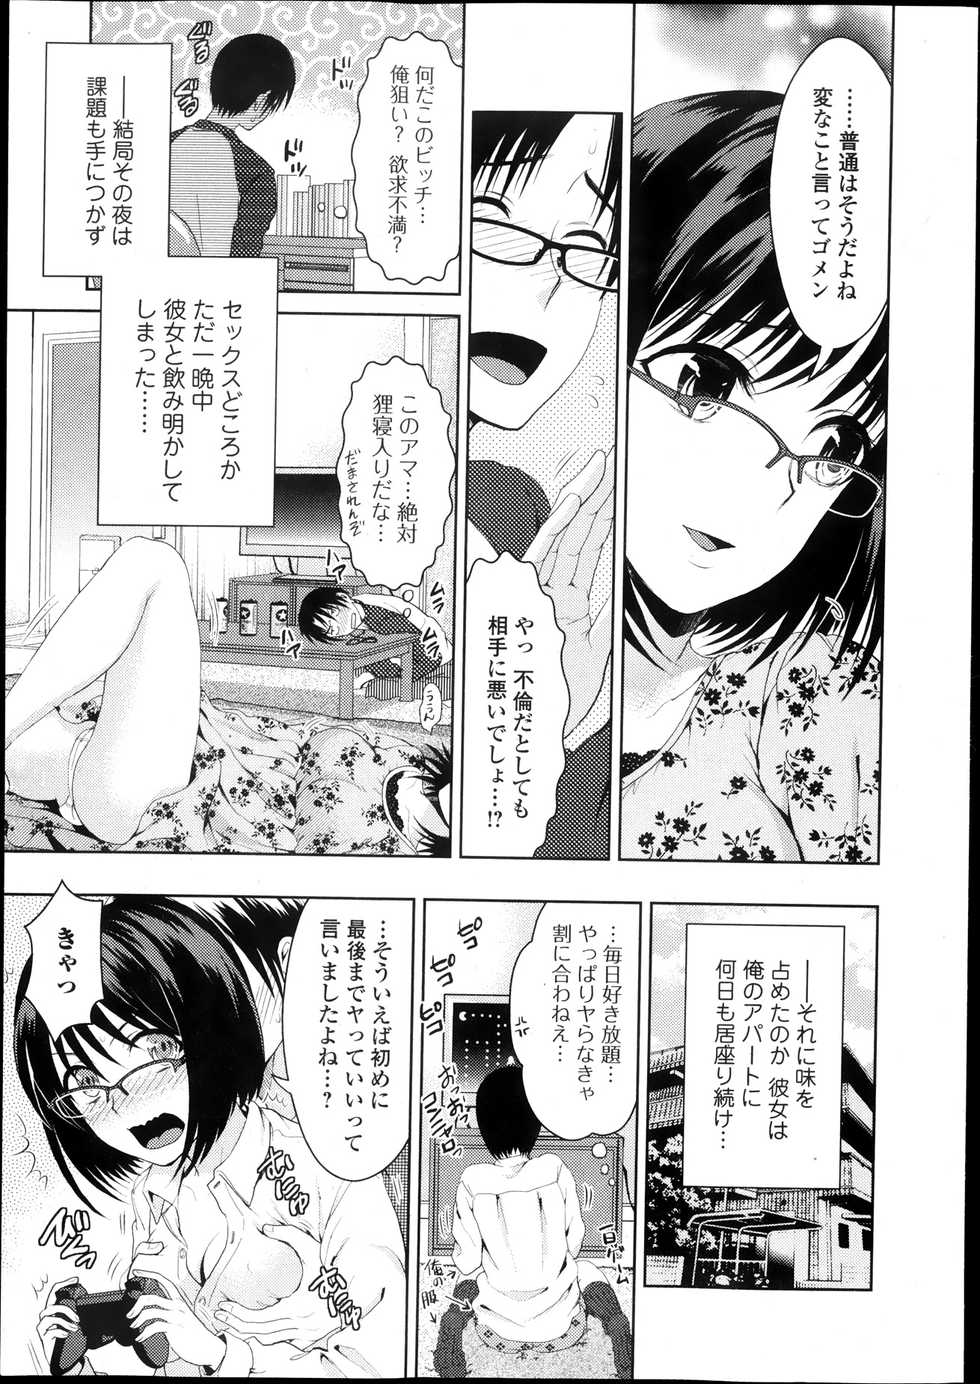 Bishoujo Kakumei KIWAME Road Vol.10 - Page 11